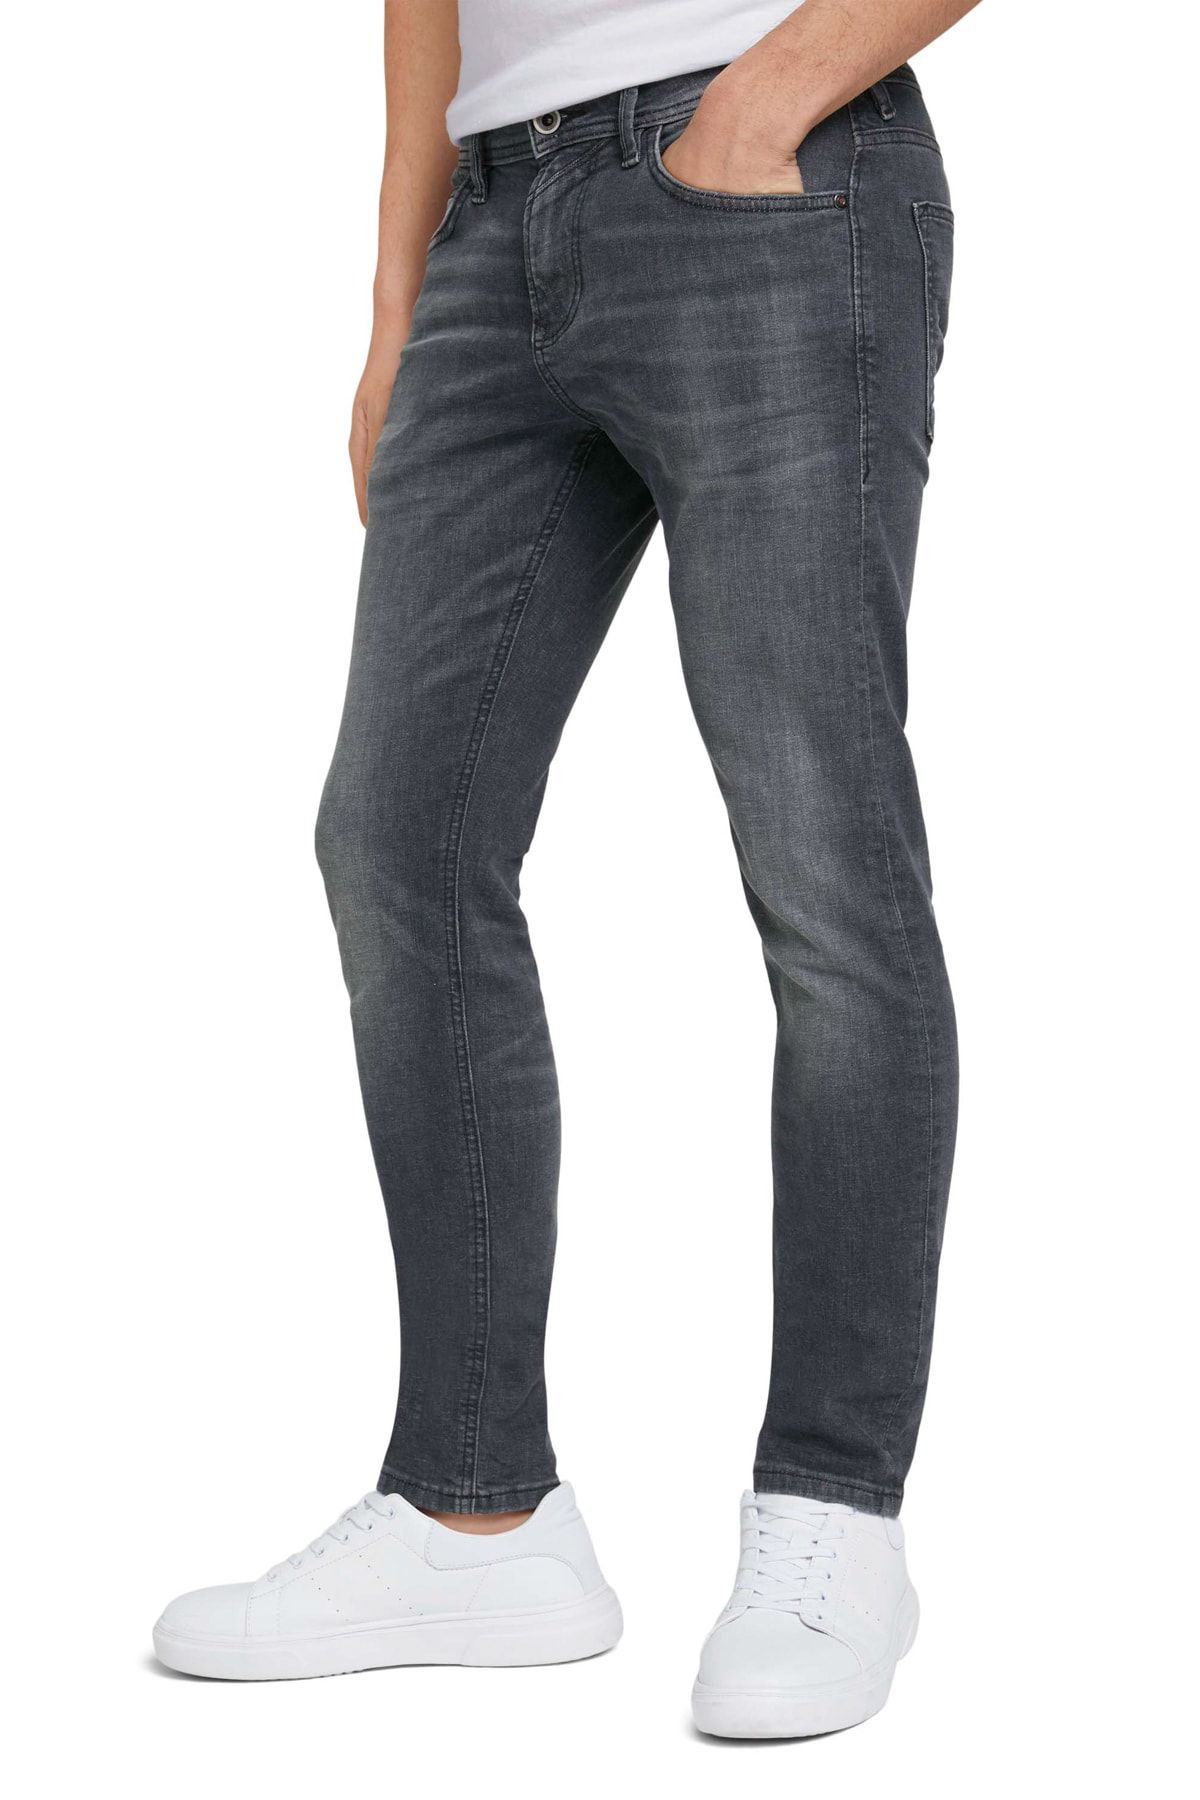 Tom Tailor Denim Jeans - Gray Skinny Trendyol - 